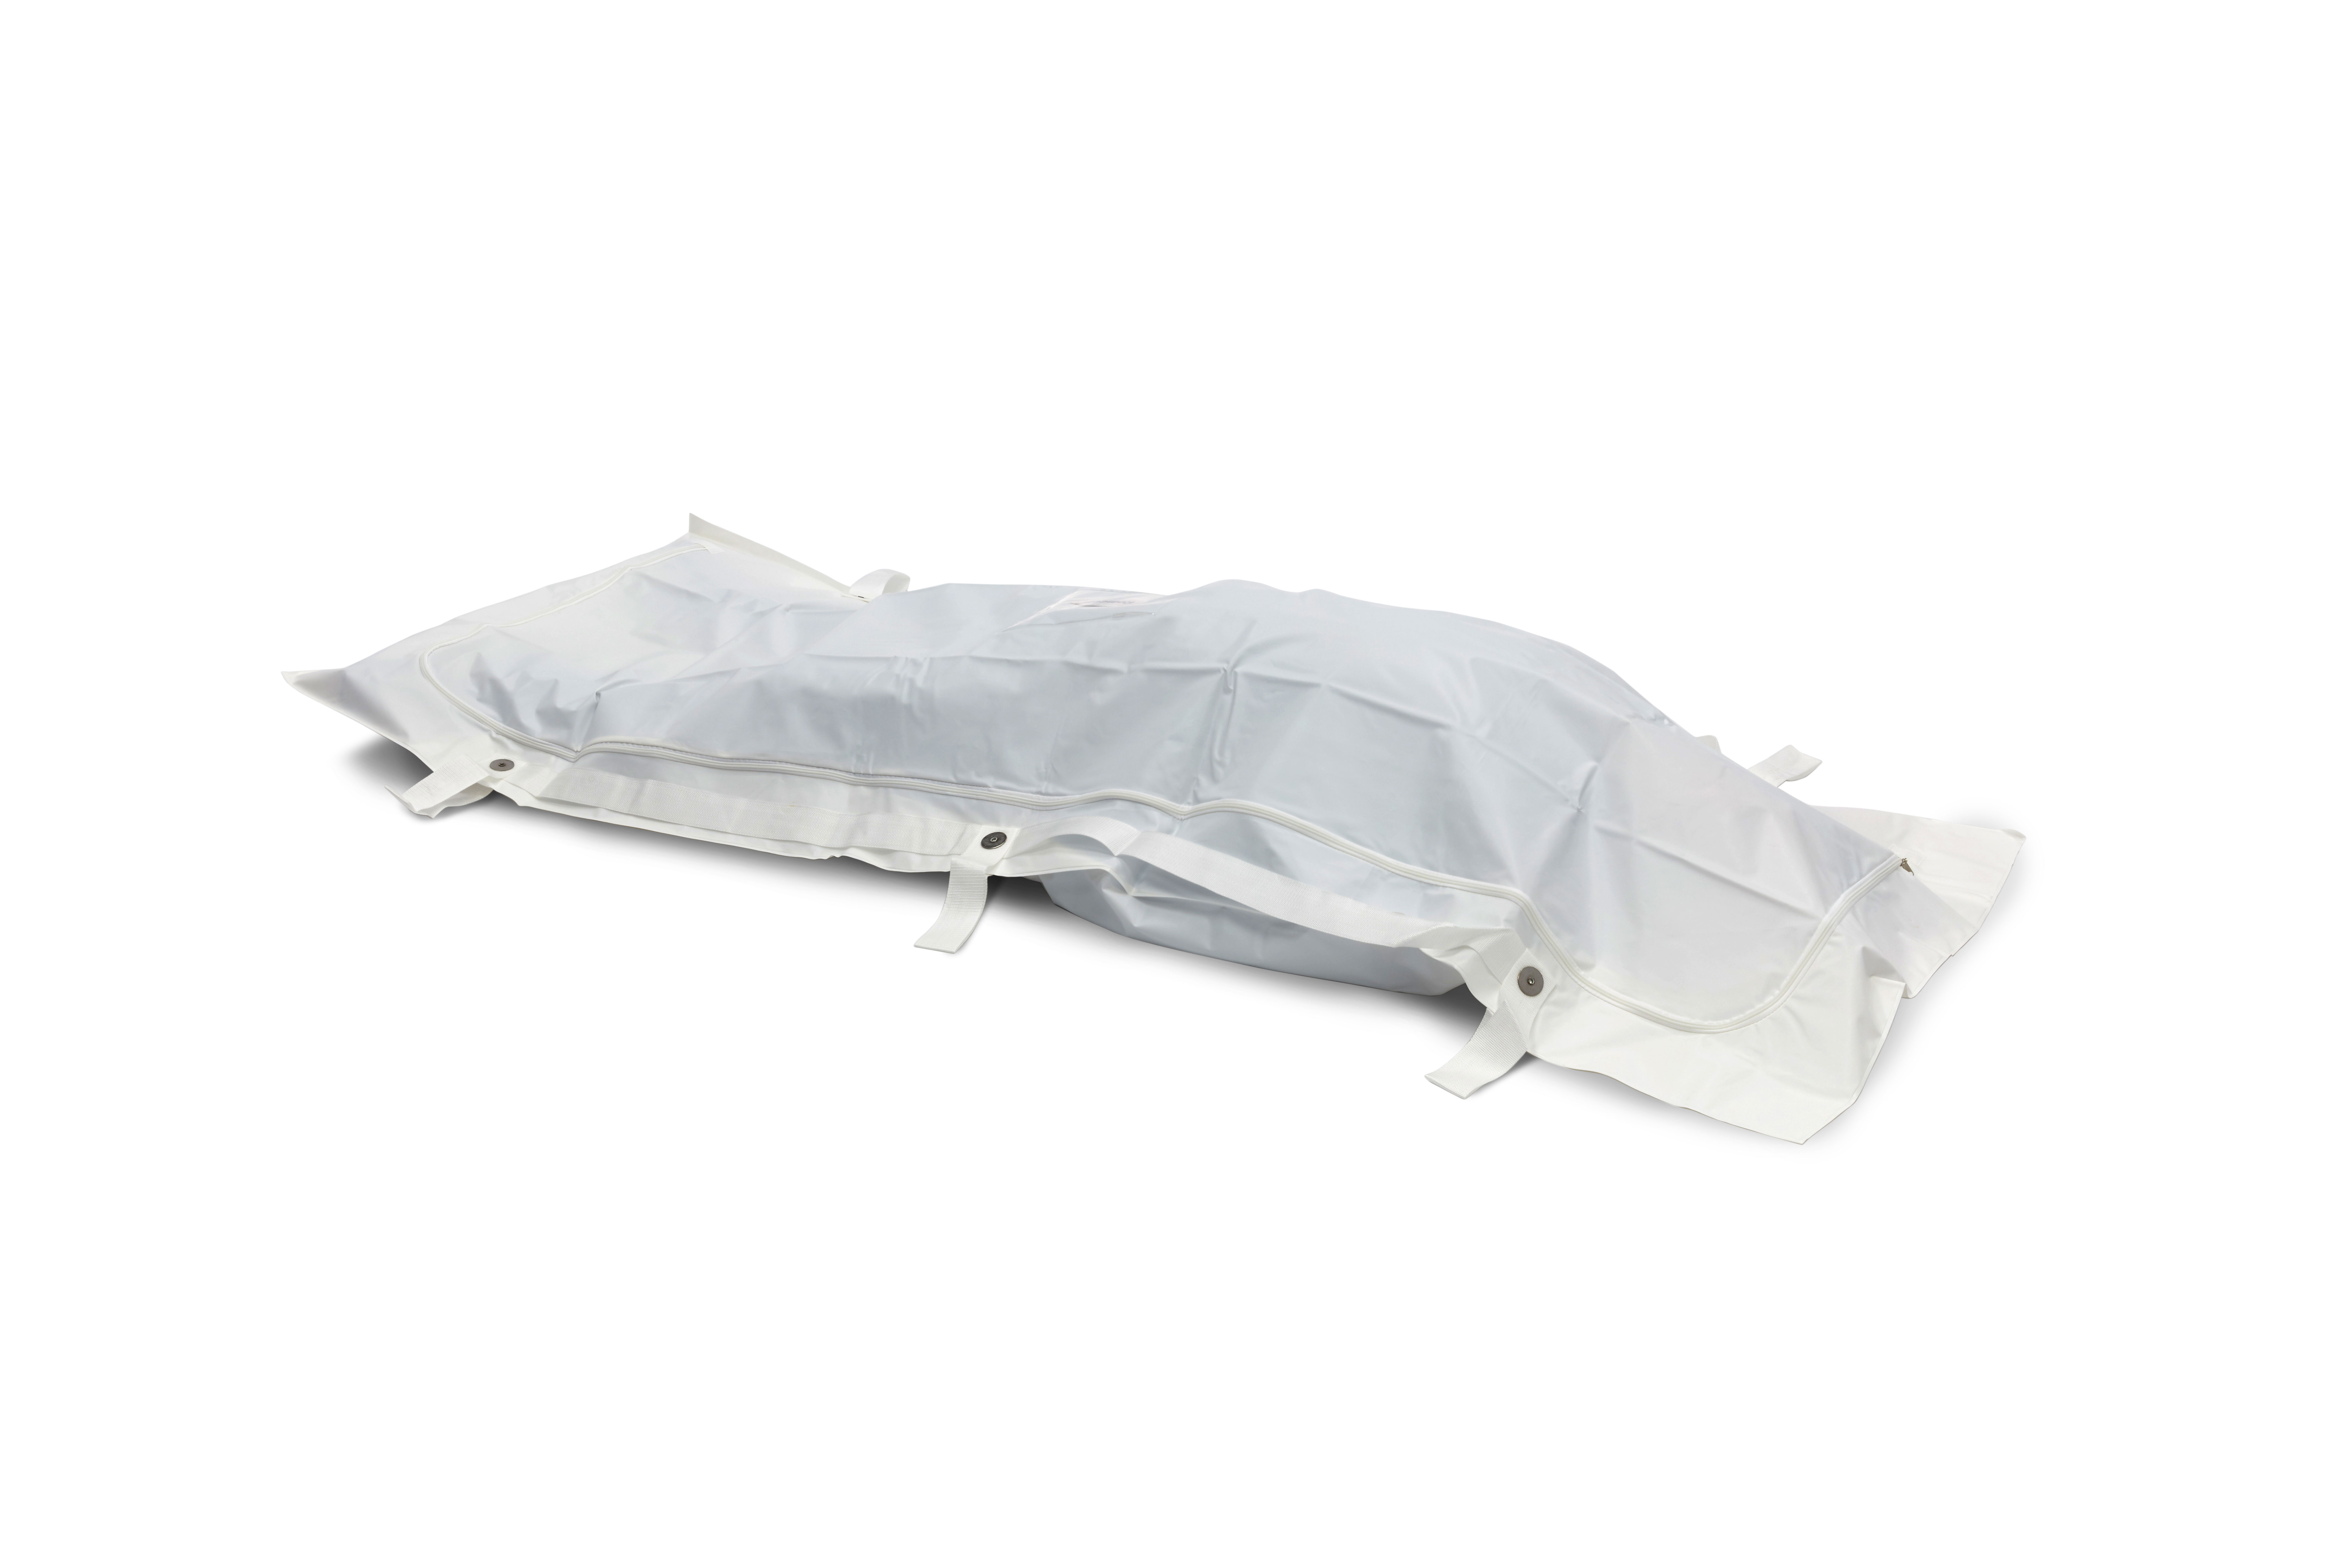 BODYBAGS Sacs mortuaires PEVA Romed, blancs, 6 anses, 90 x 230 cm, à l’unité dans un sachet en polyéthylène, 20 pièces par carton.